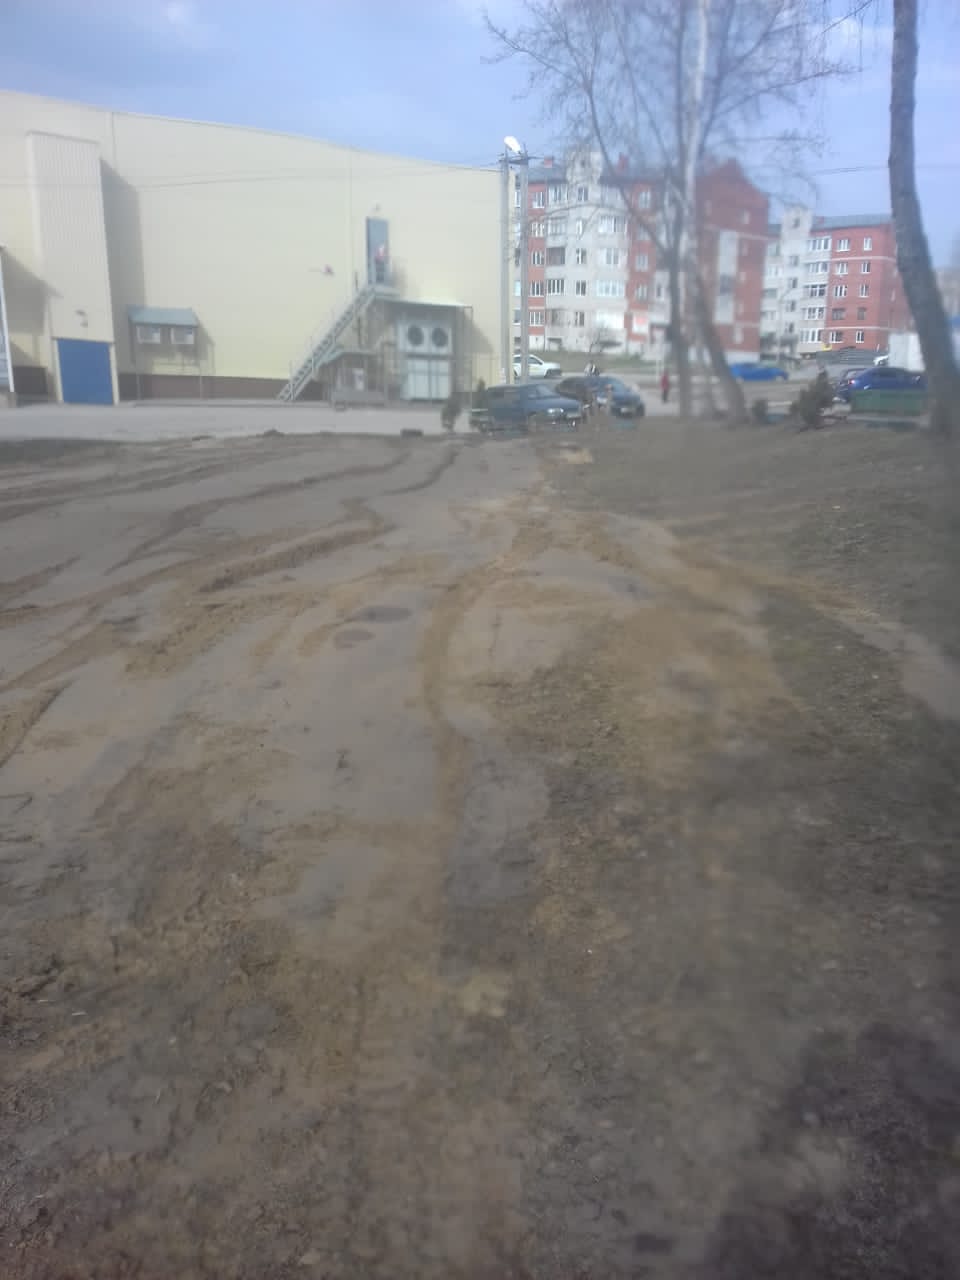 Обустройство детской игровой площадки  в городе Суворов по улице Тульская д.4